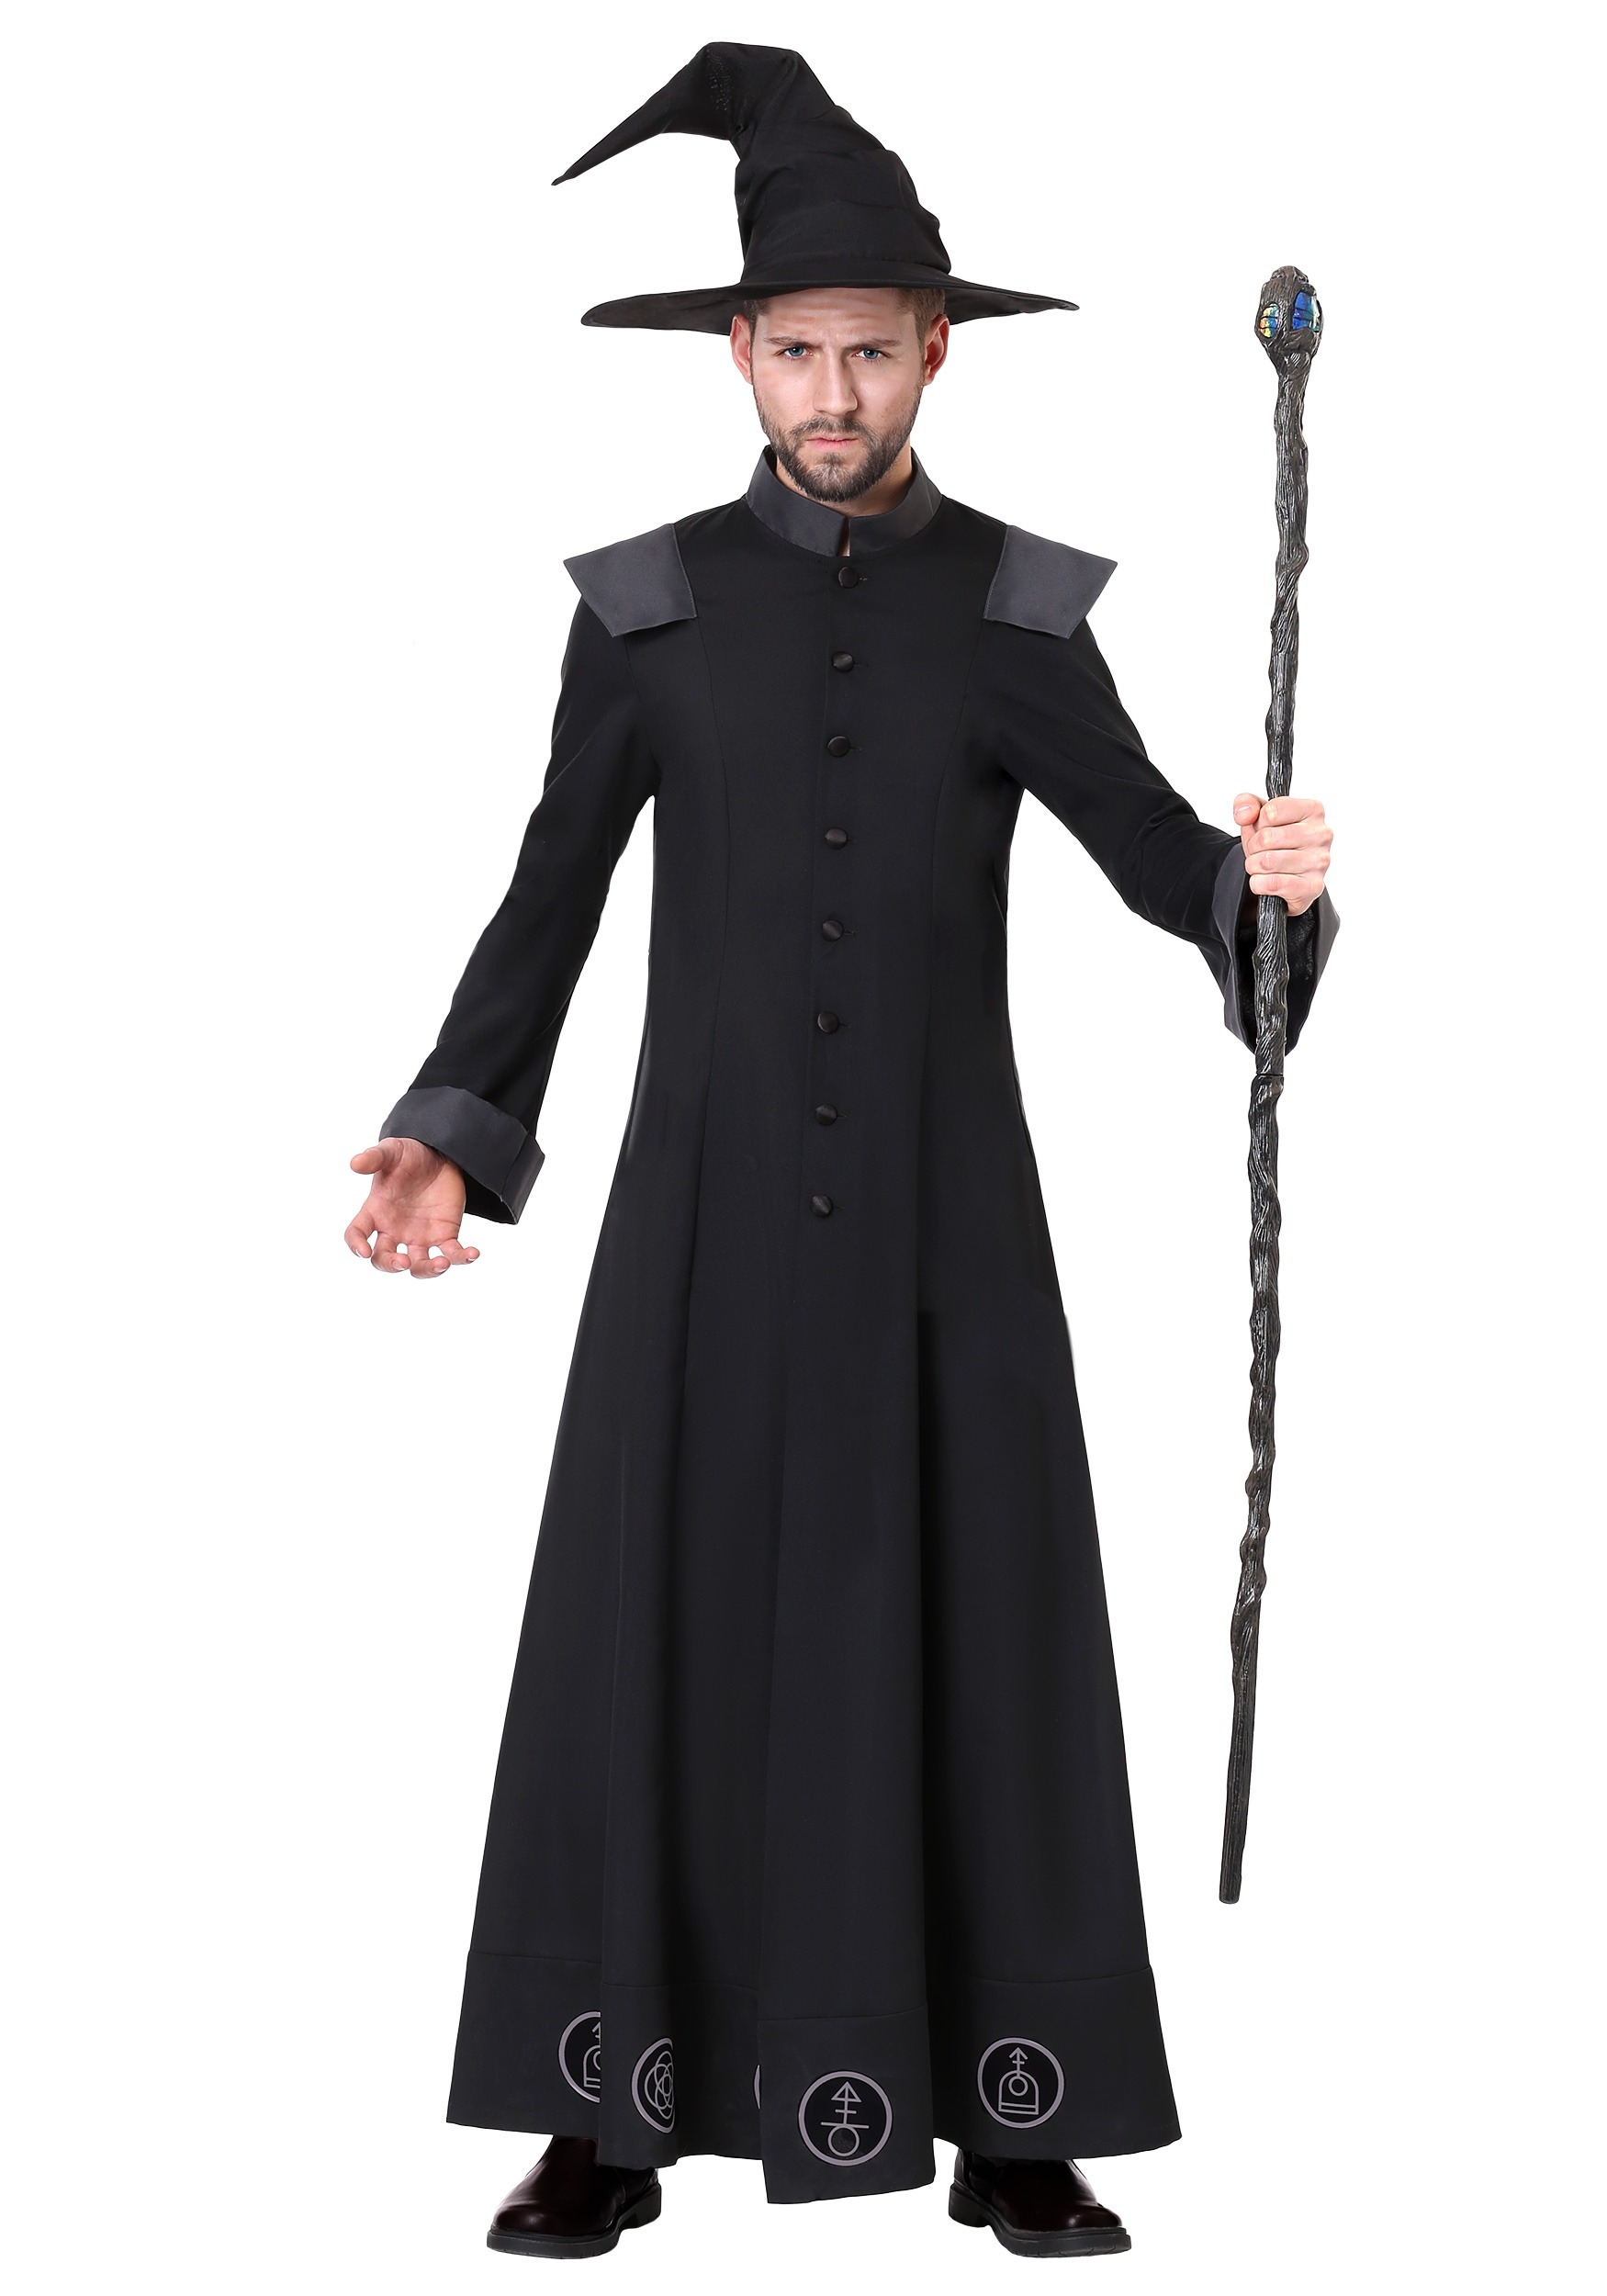 Adults Ladies Mens Halloween Warlock Skeleton Costume Onesize fits 8-14 Black 